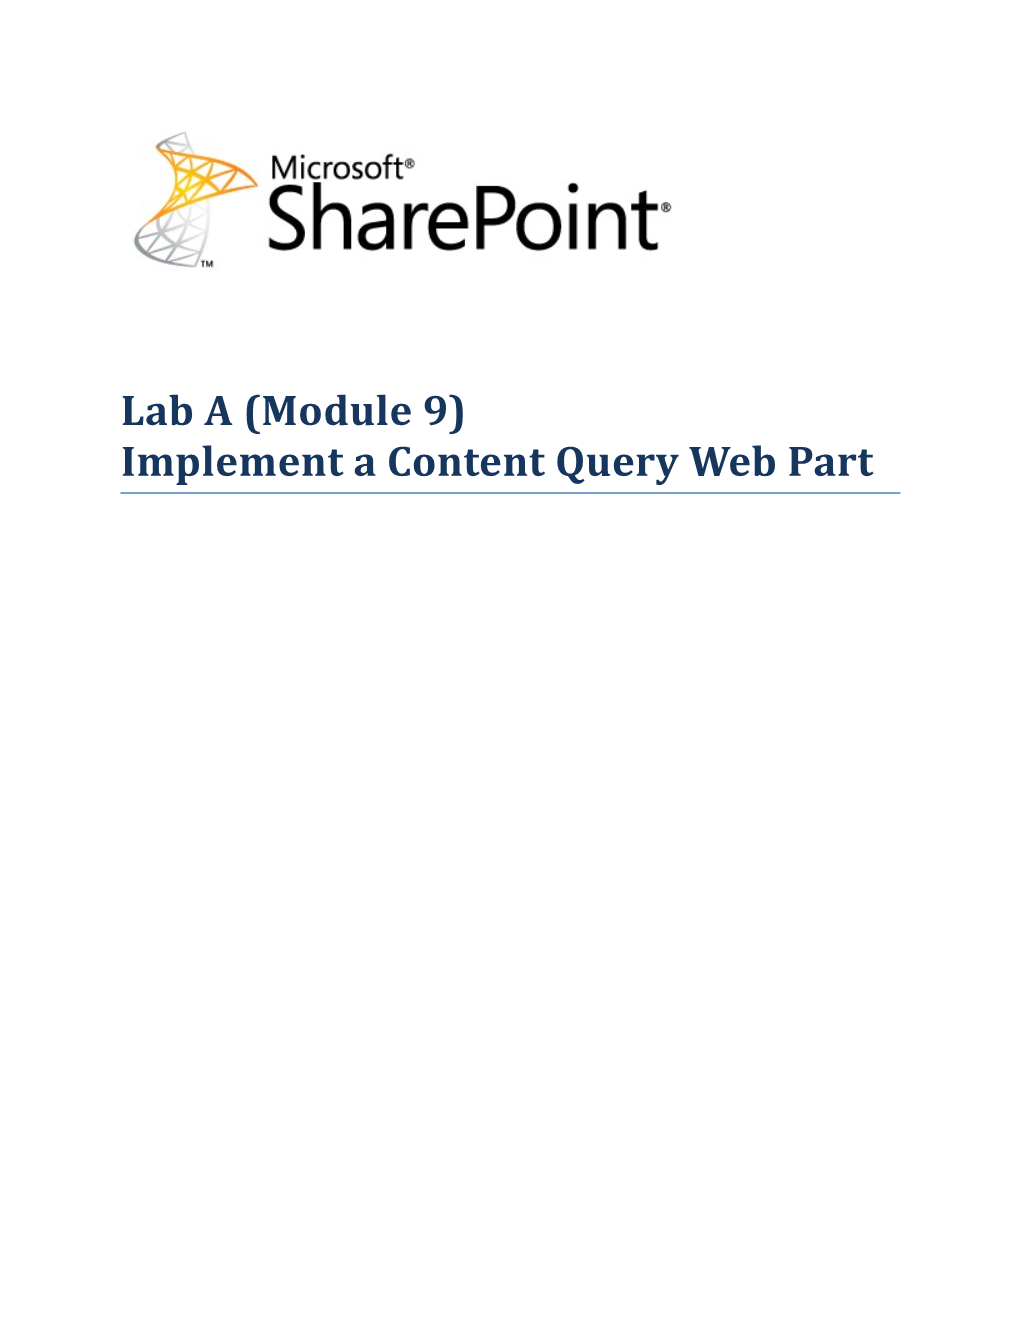 Lab A(Module 9) Implement a Content Query Web Part